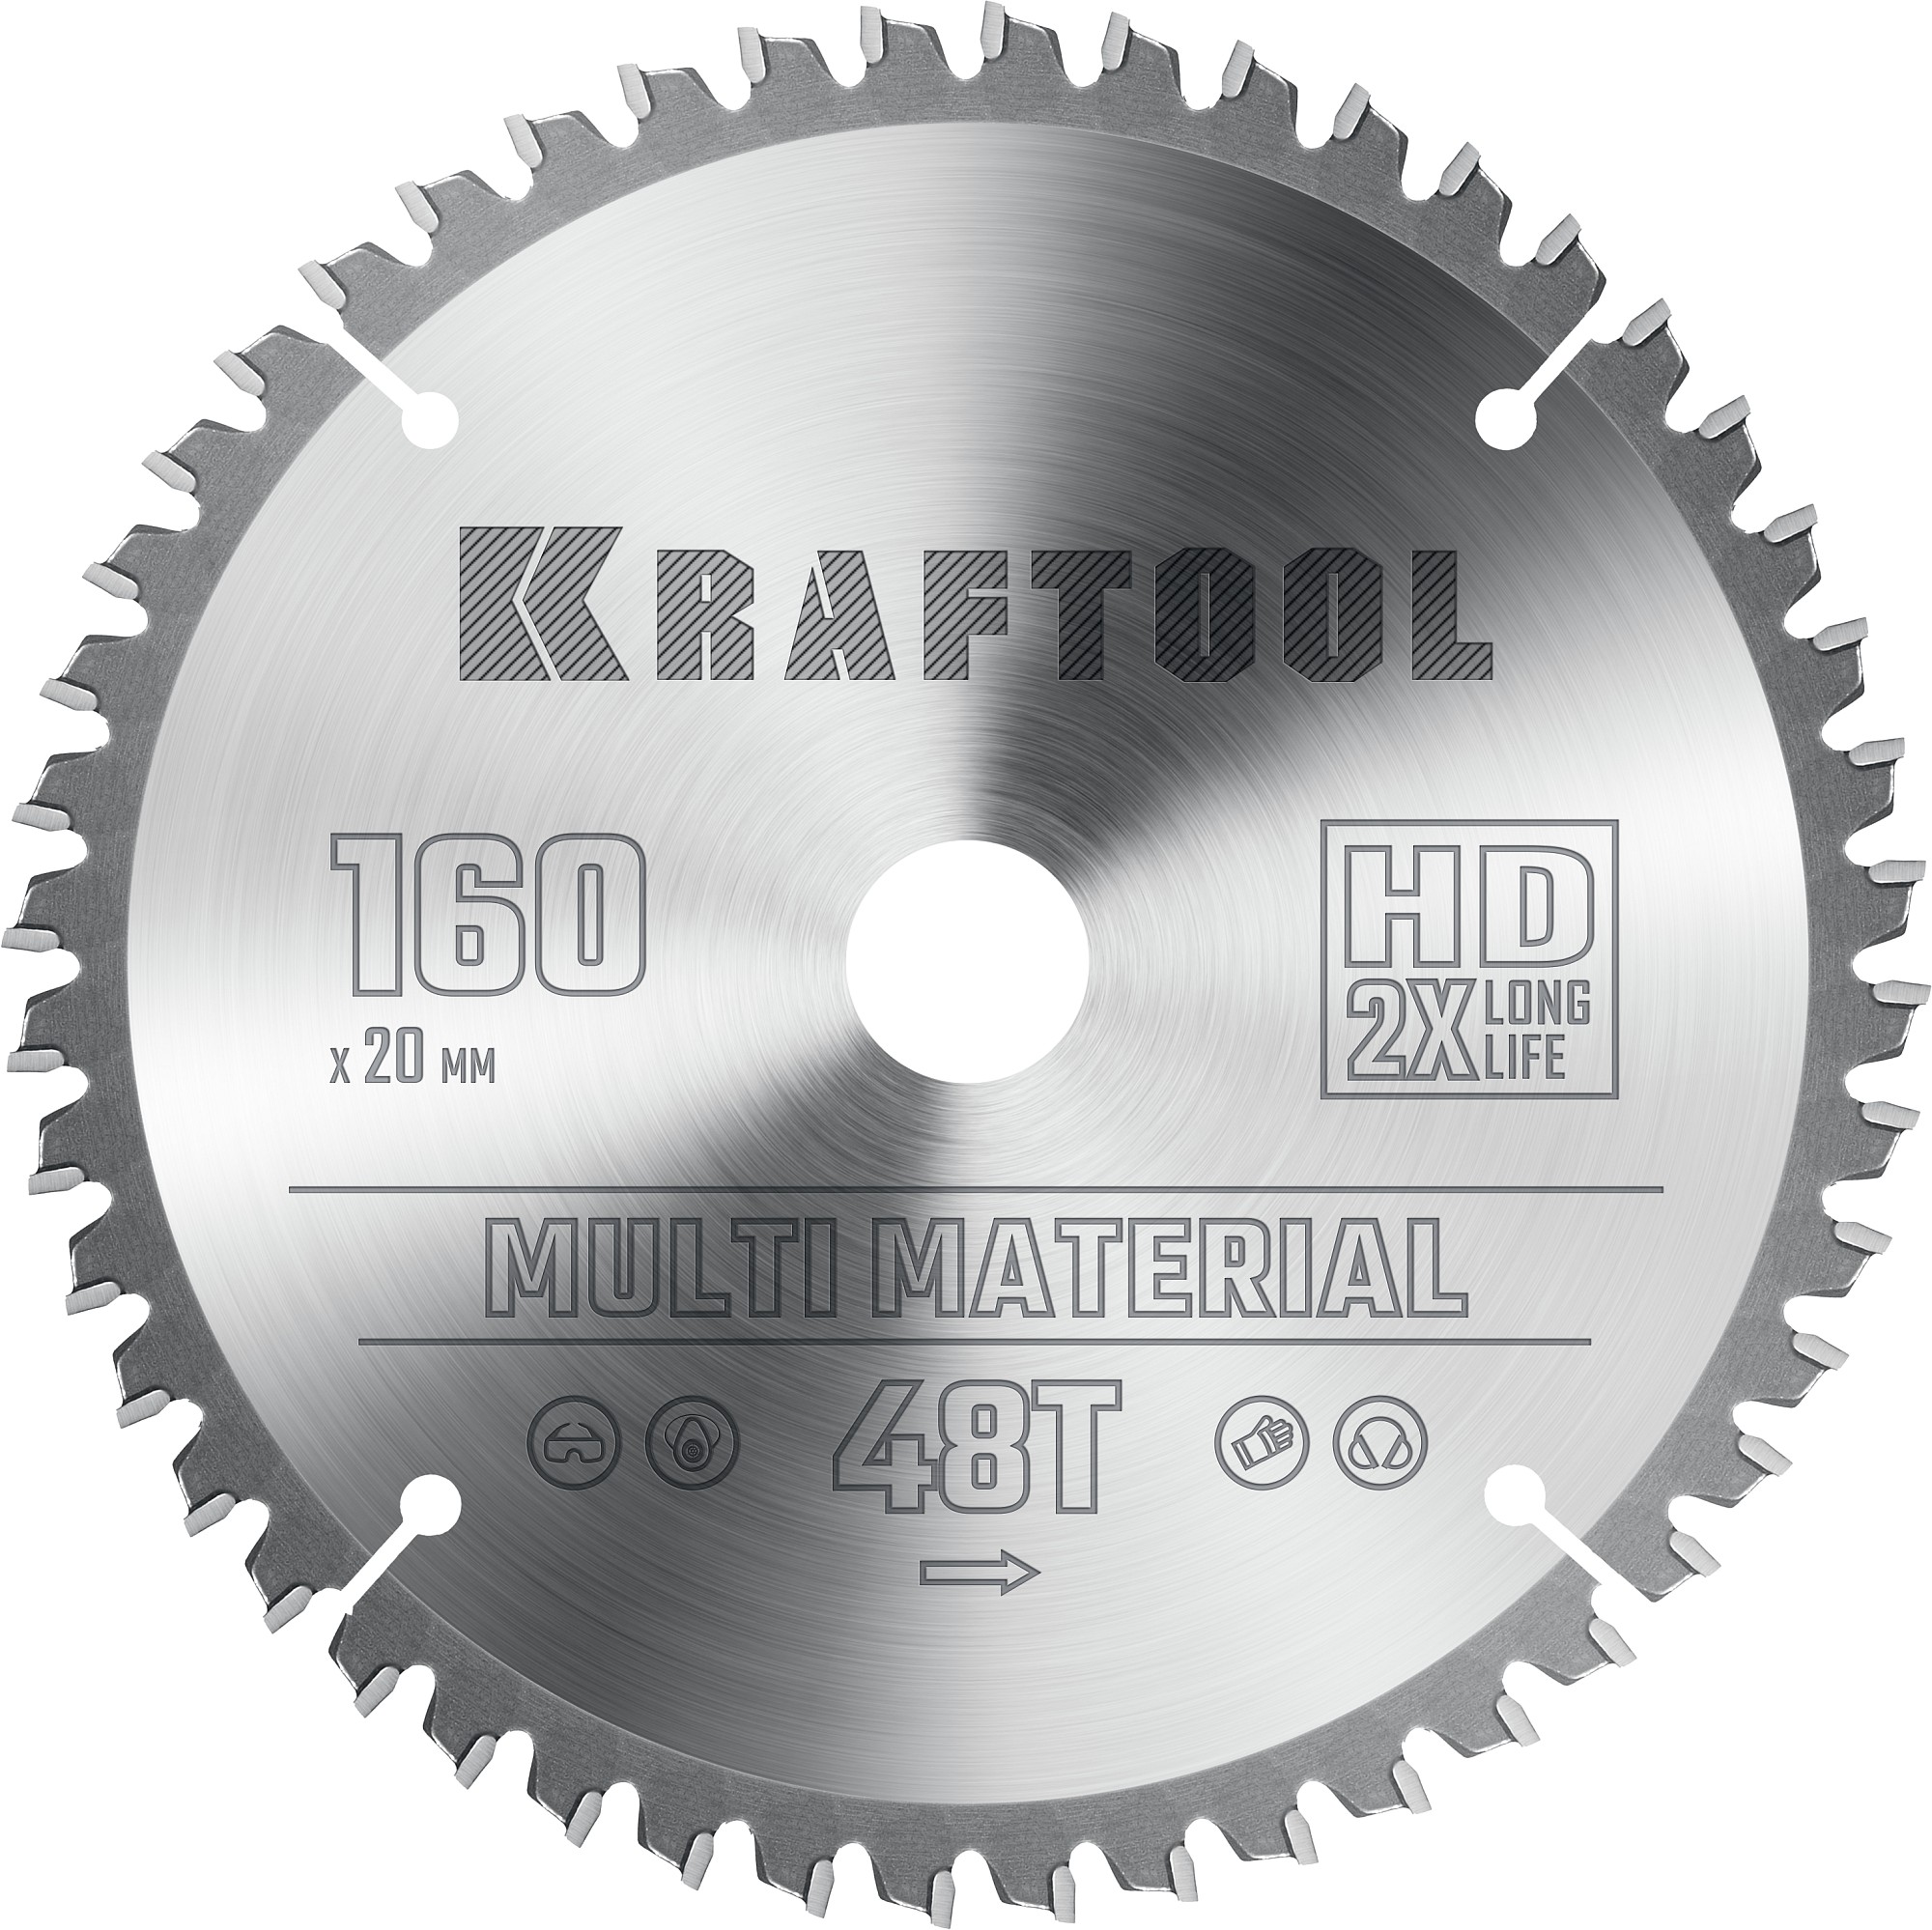 Диск пильный по алюминию Kraftool Multi Material 160х20 мм, 48Т 36953-160-20 диск пильный по алюминию kraftool multi material 250х30 мм 80т 36953 250 30